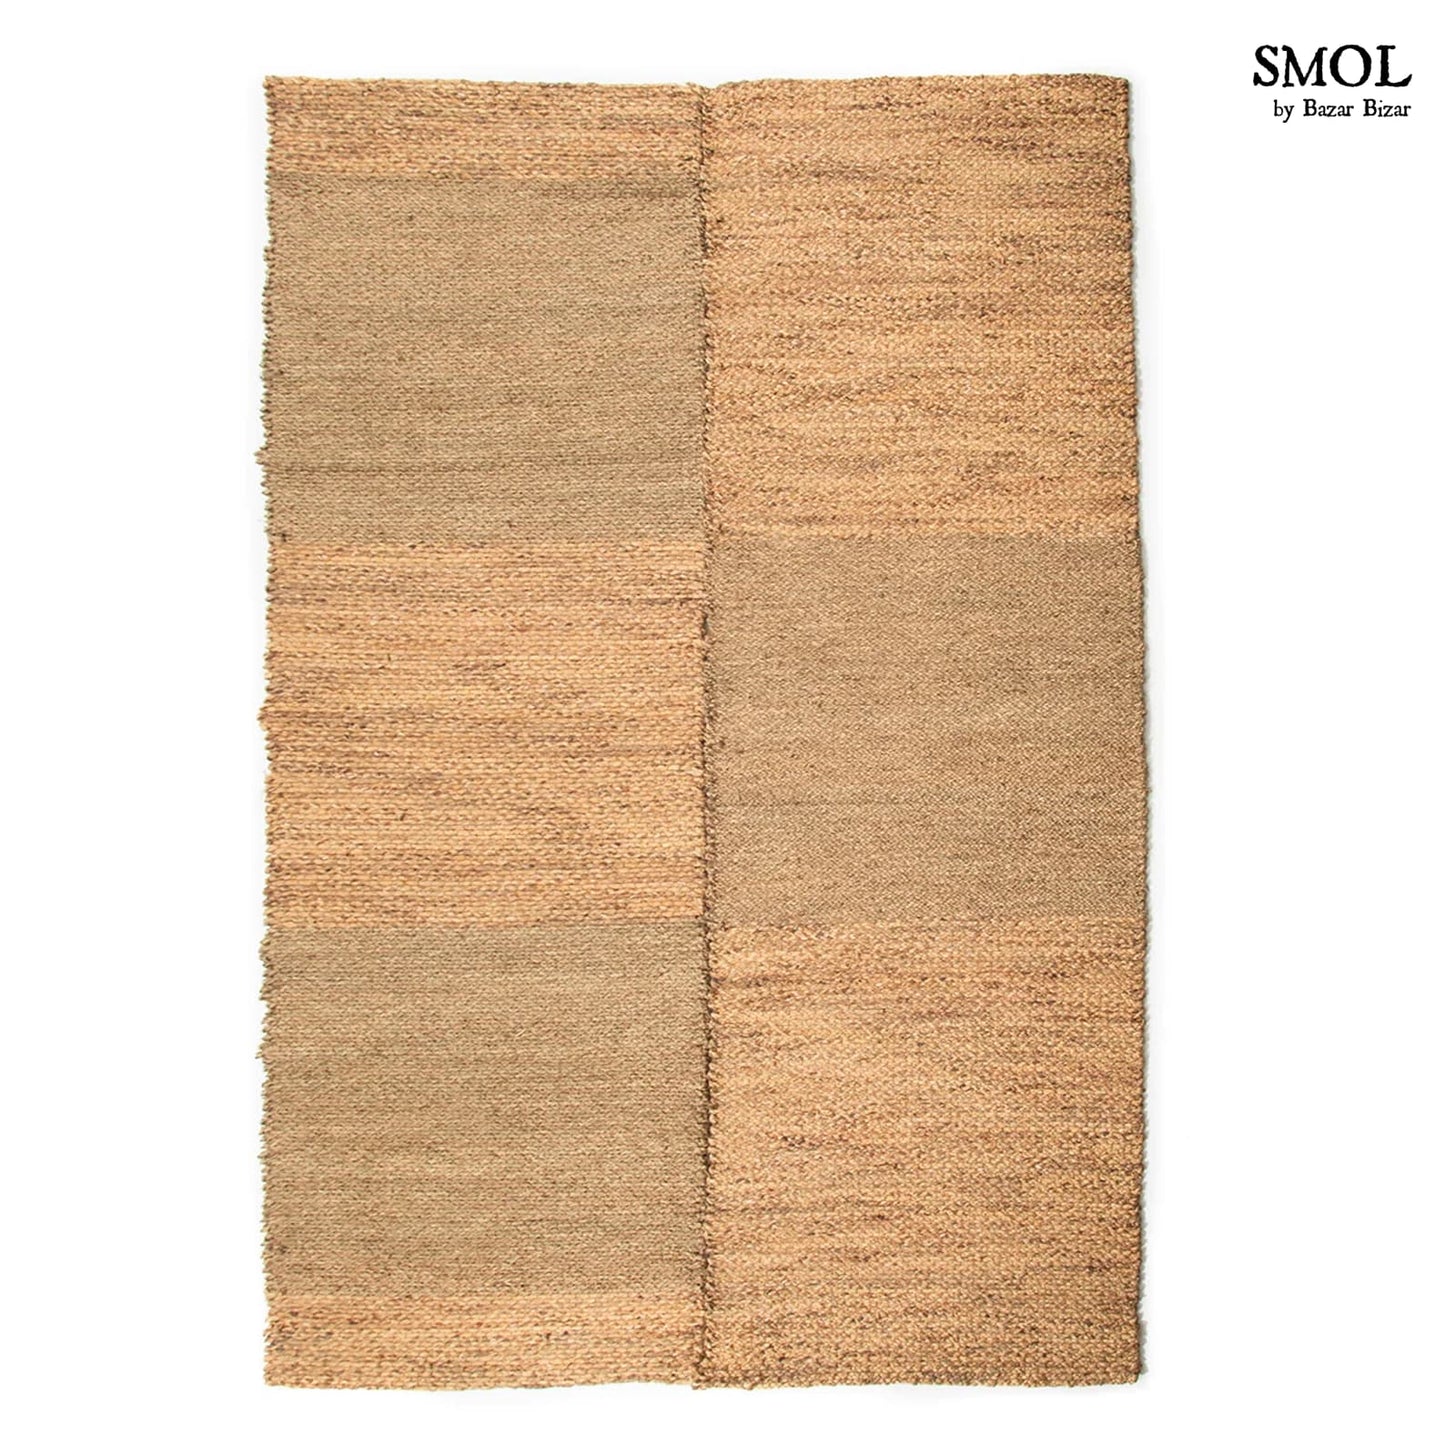 smol.hu - PADDLE, szőnyeg, 280x175 termékképe